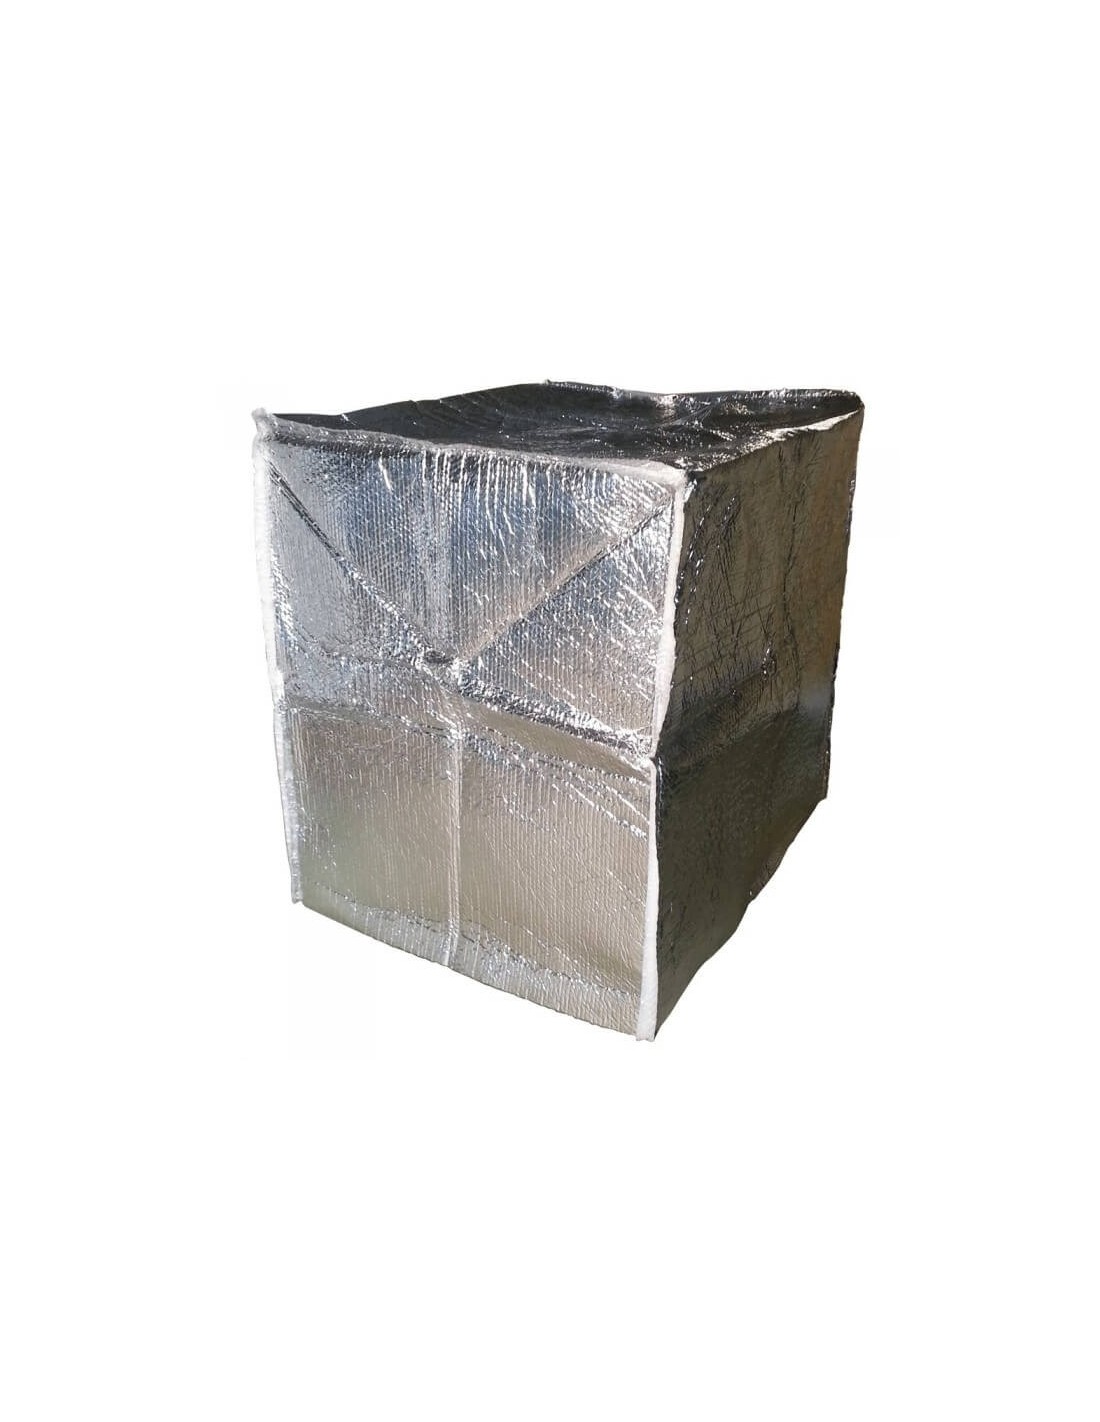 Boxprotec  Housse de protection pour cuve de 1 000 litres en toile PVC.